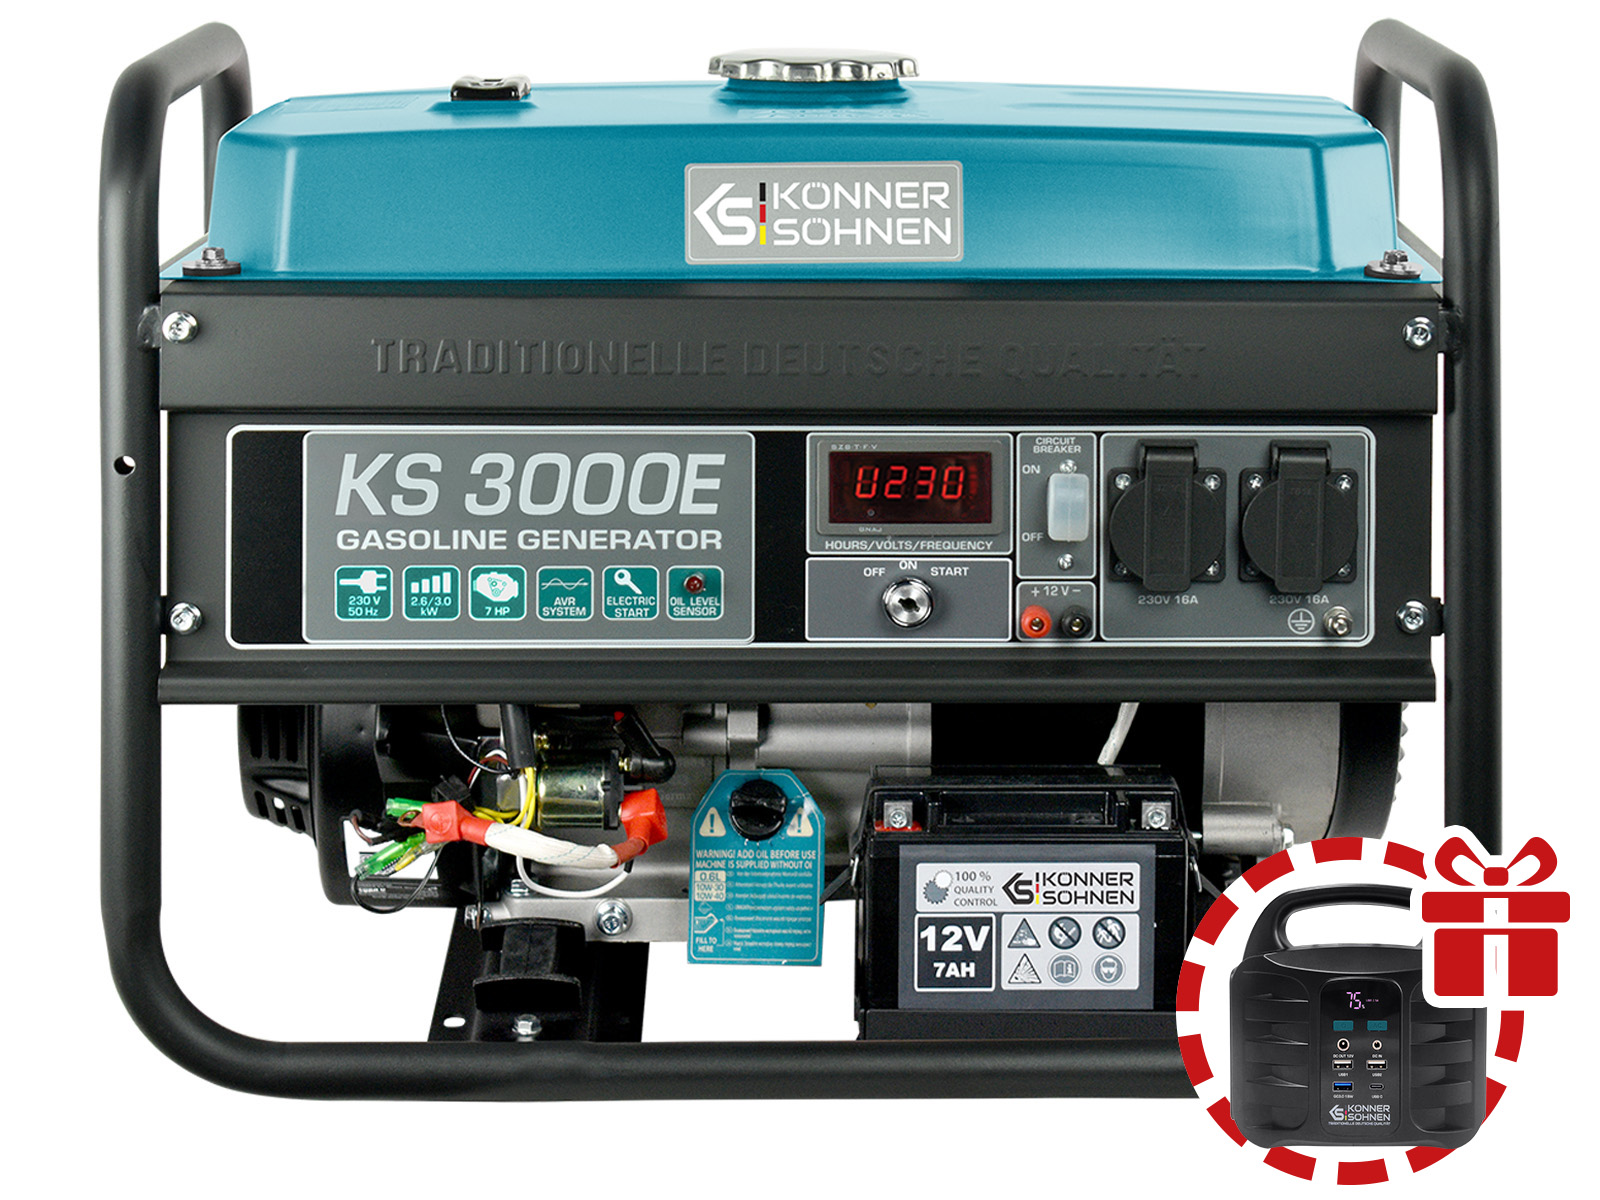 Gasoline generator "Könner & Söhnen" KS 3000E